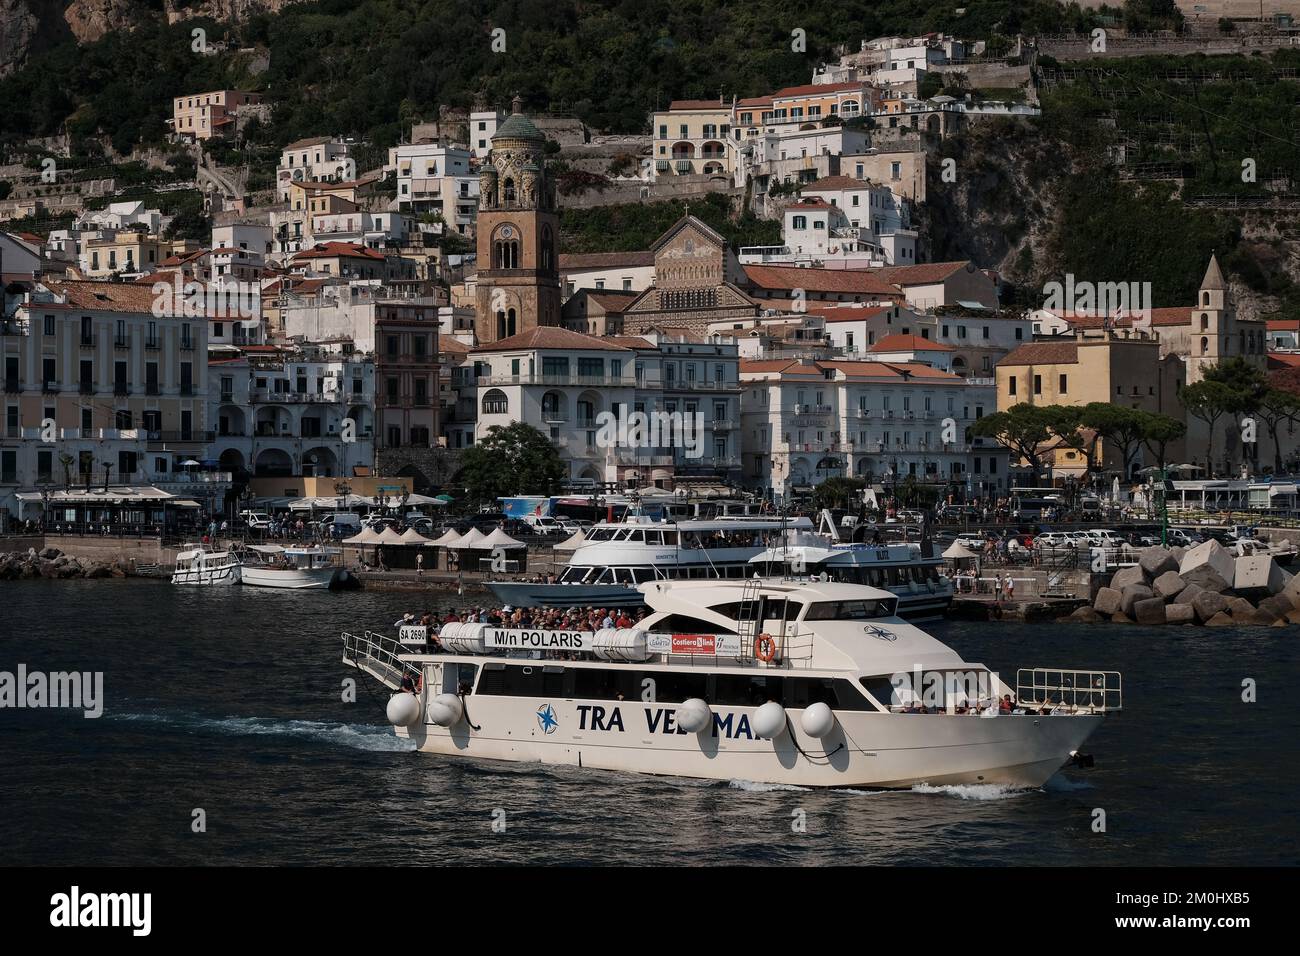 Amalfi coast ferry immagini e fotografie stock ad alta risoluzione - Alamy